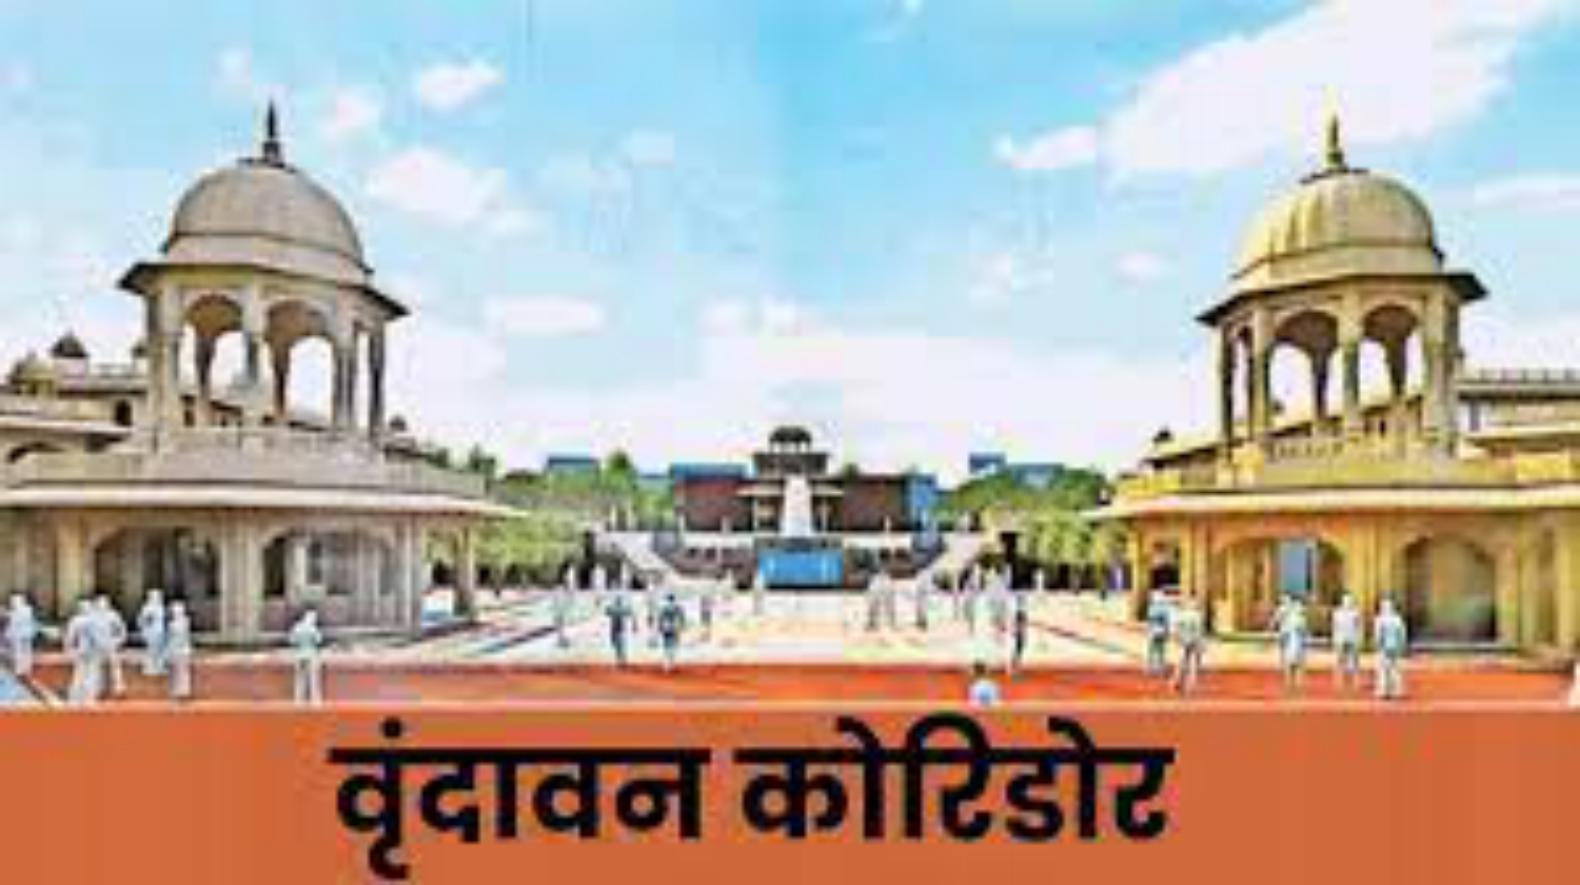 बांके बिहारी मंदिर कॉरिडोर मामले में पक्षकारों की बैठक आज, नतीजा हाईकोर्ट में होगा सार्वजनिक